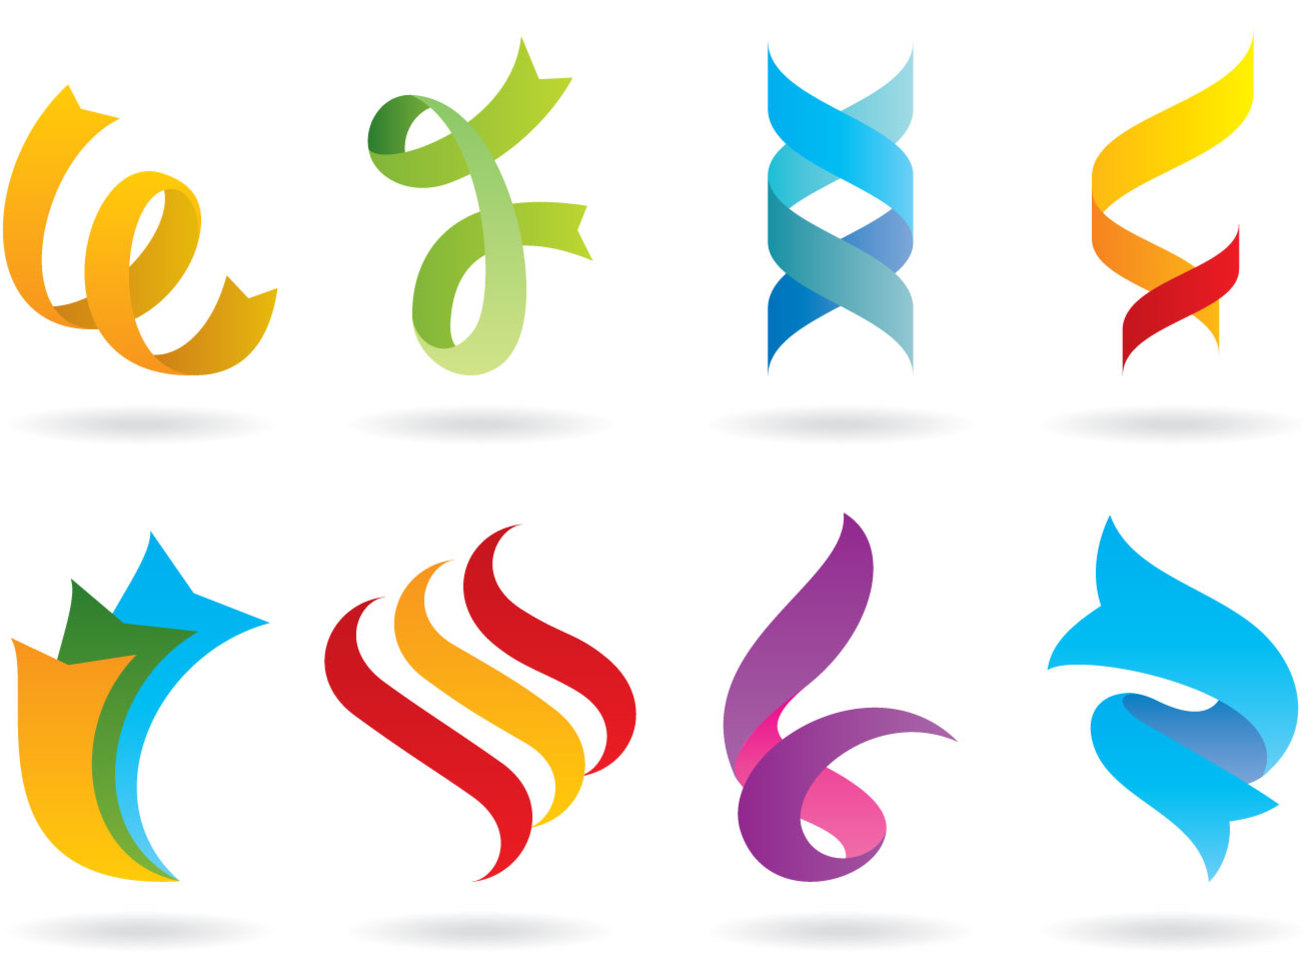 Download Ribbons Logos Vector Art & Graphics | freevector.com